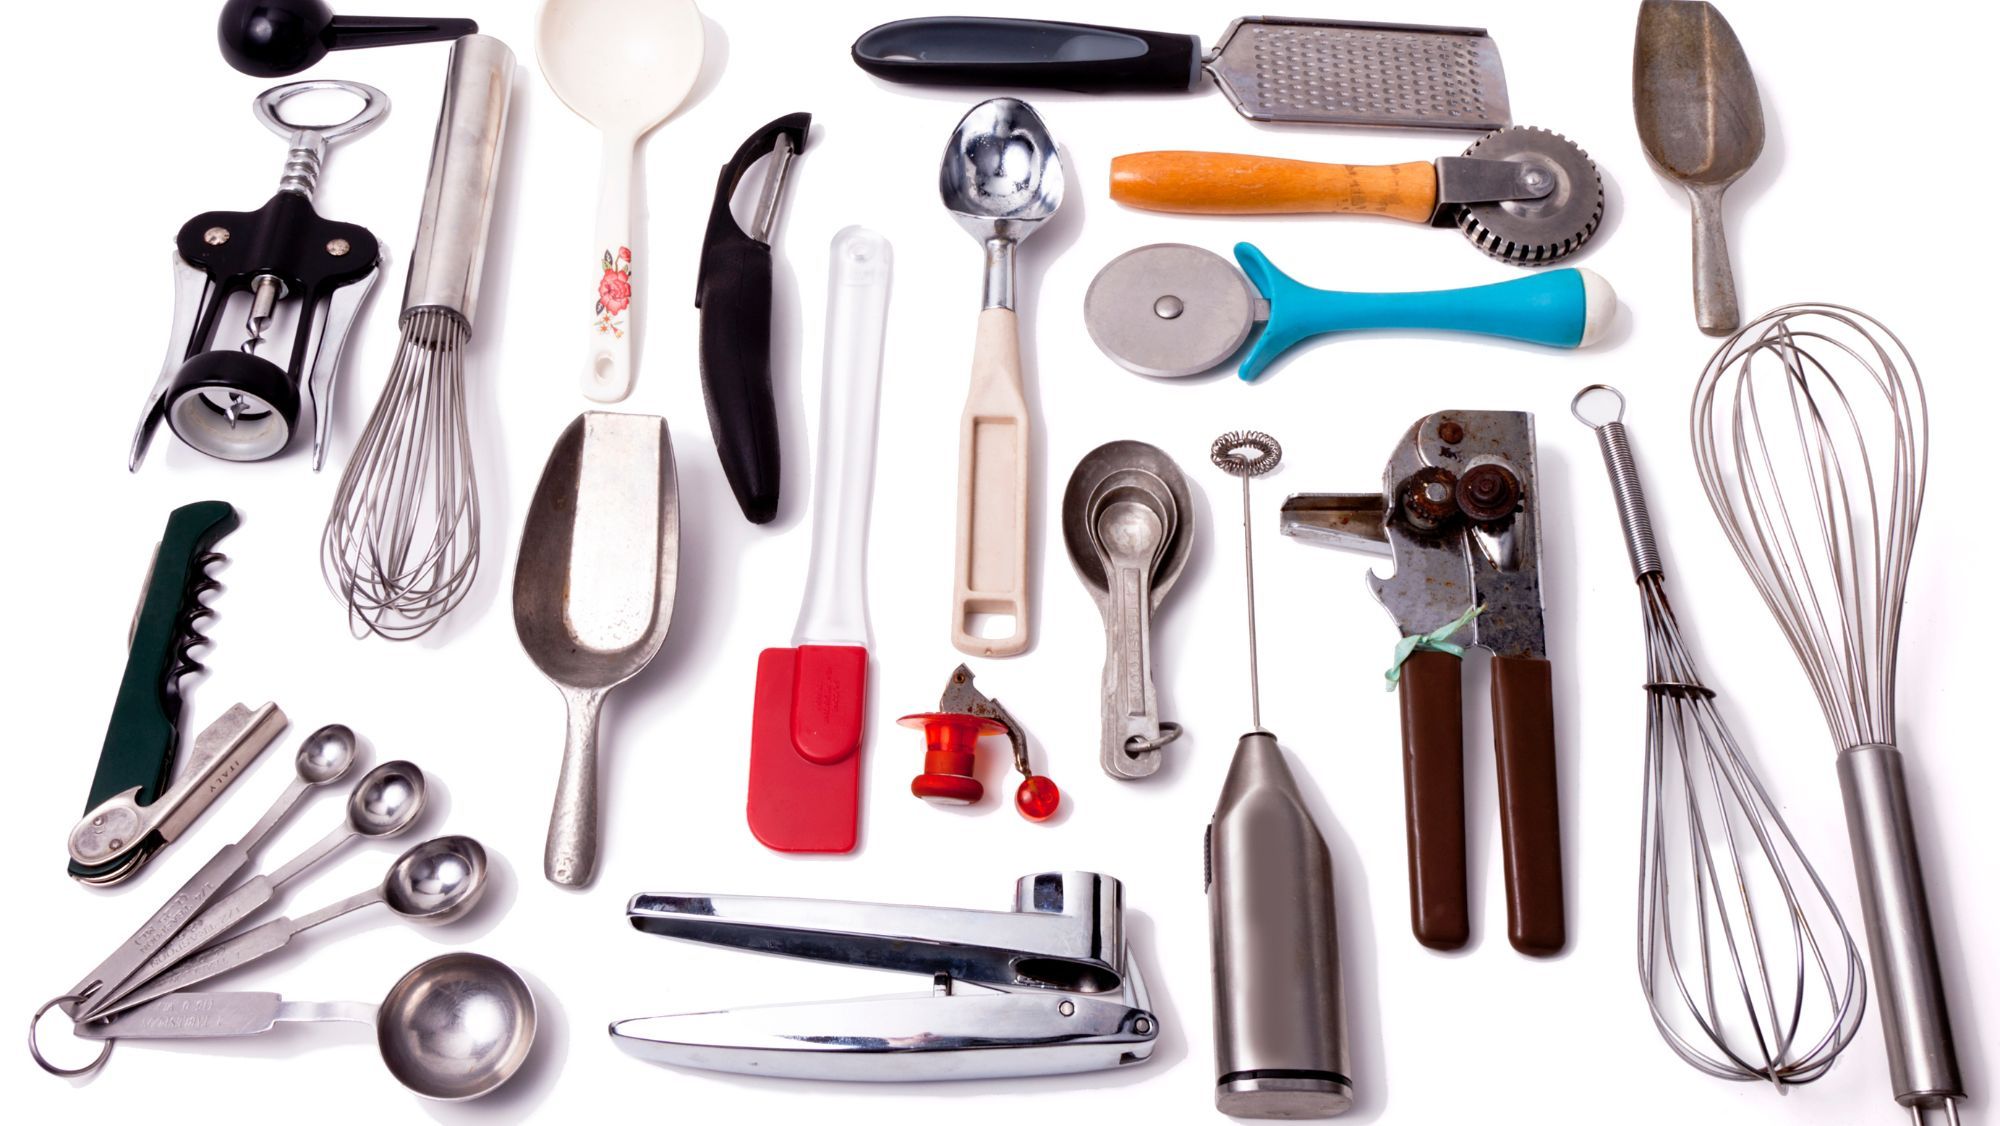 Establecer utensilios de cocina y objetos tradicionales